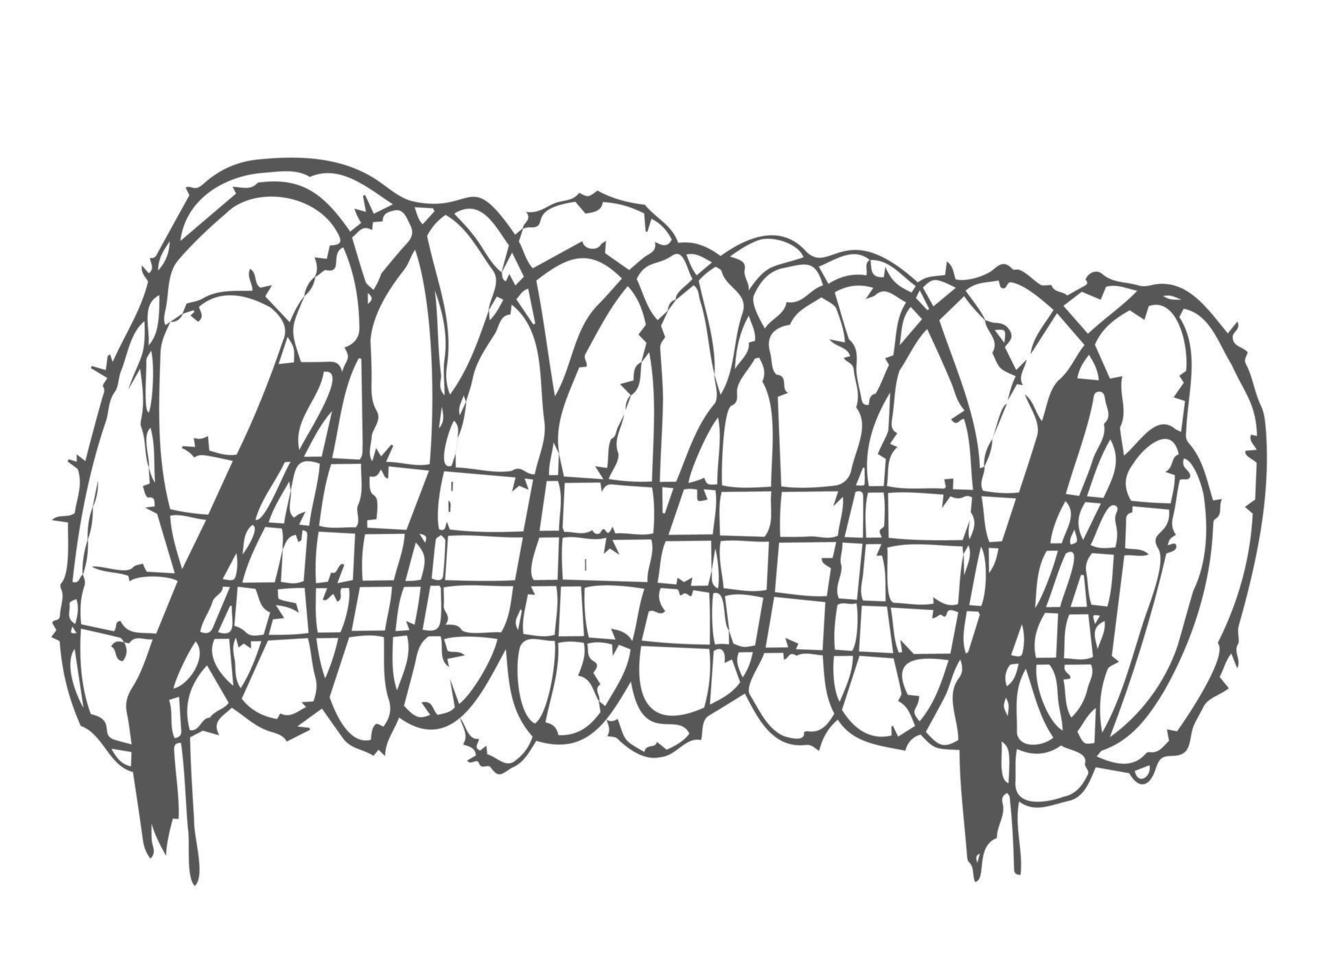 métal acier barbelé spirale câble avec les épines ou pointes réaliste vecteur illustration isolé sur transparent Contexte avec ombre. escrime ou barrière griffonnage élément